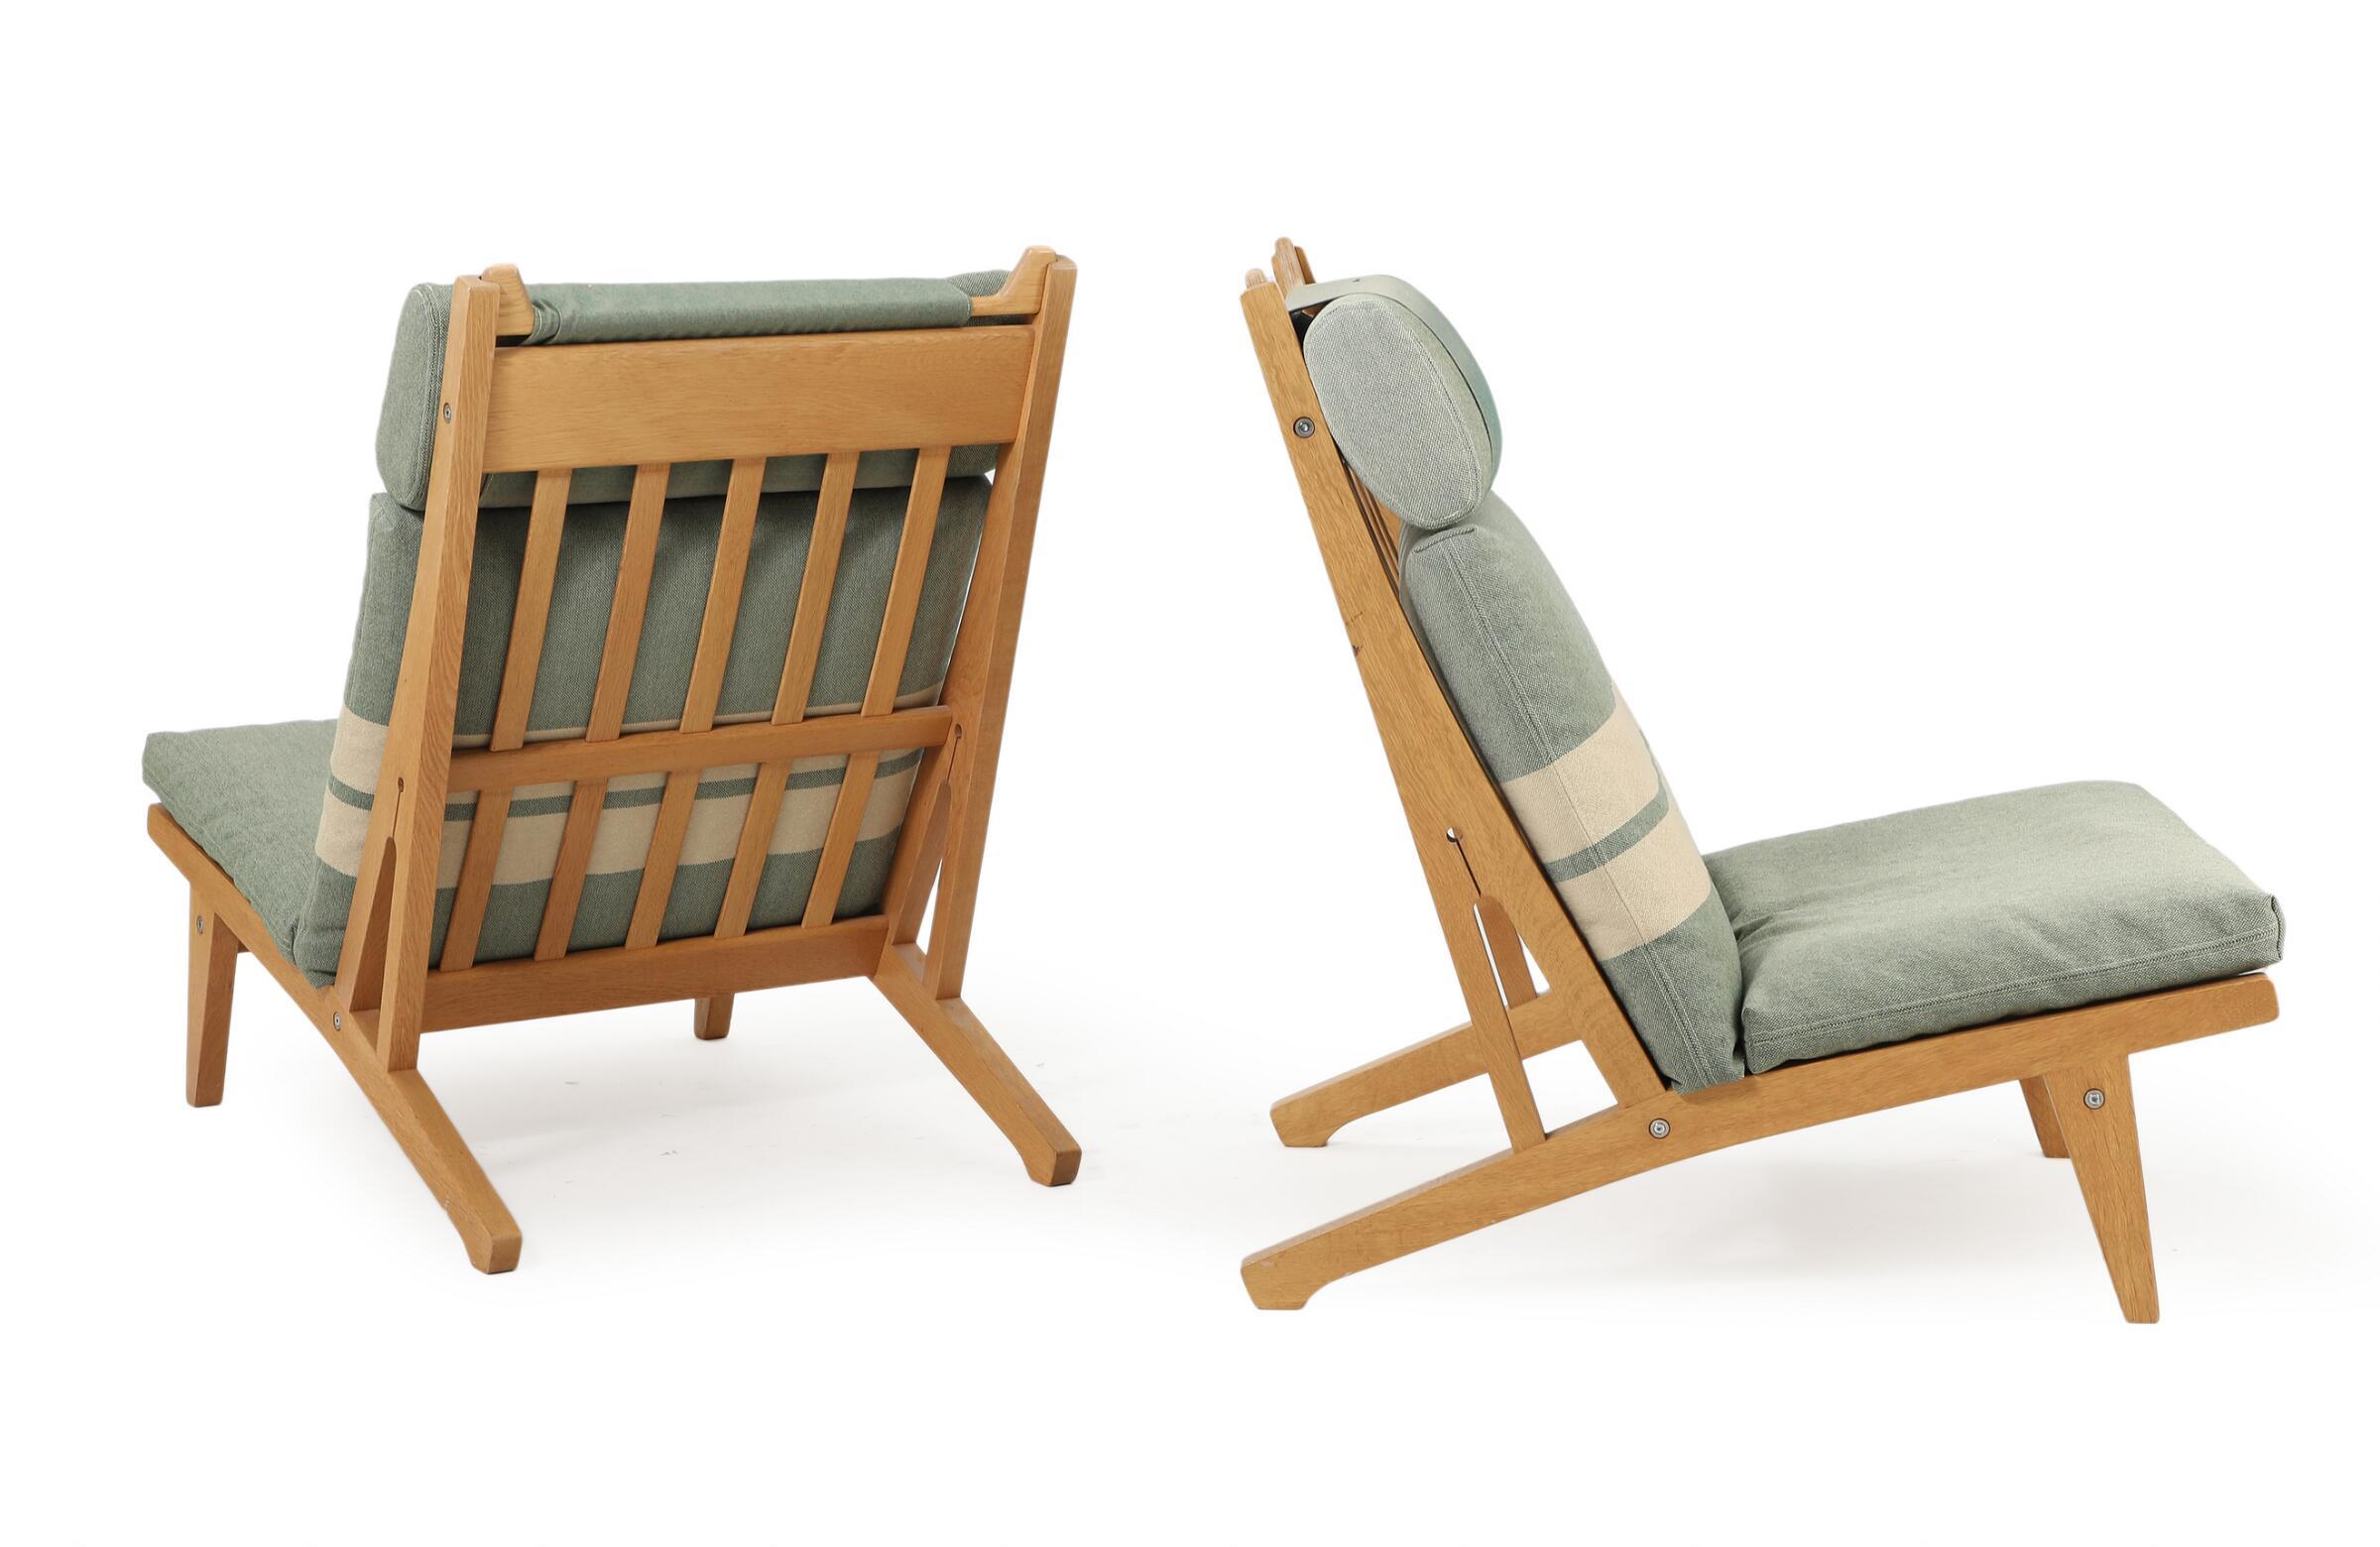 Paire de chaises à haut dossier en chêne Hans J. Wegner : GE 375
Conçu en 1969. Fabriqué et estampillé par GETAMA, Gedsted
Coussins libres en laine d'origine avec des inserts neufs. Restauré